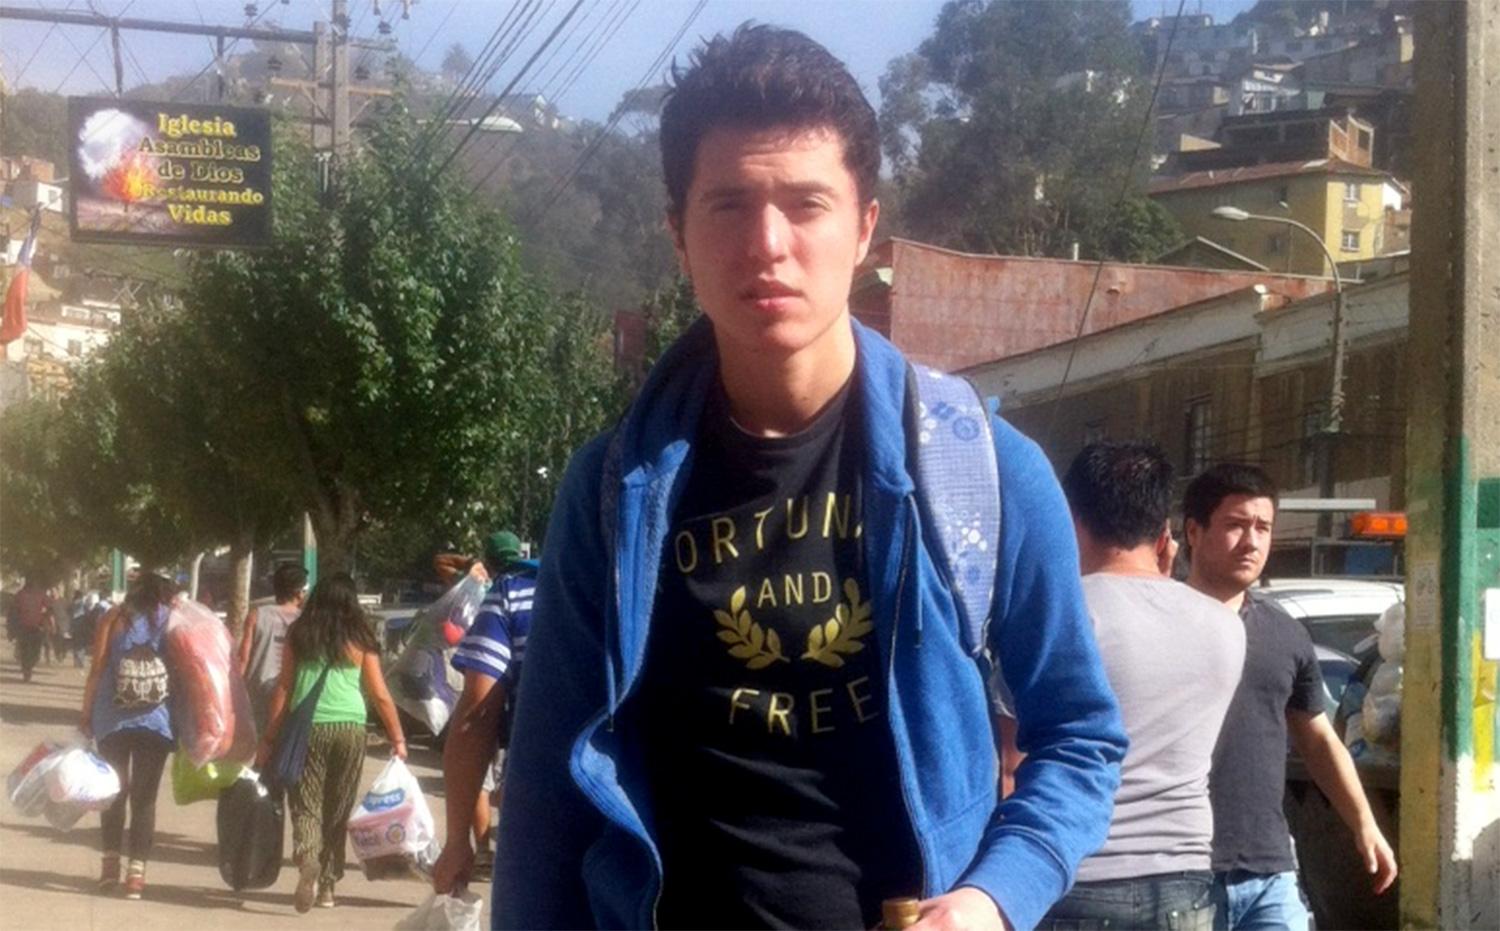 Andrés Riffo, 19, studerar i Valparaiso och befinner sig mitt i räddningsarbetet.